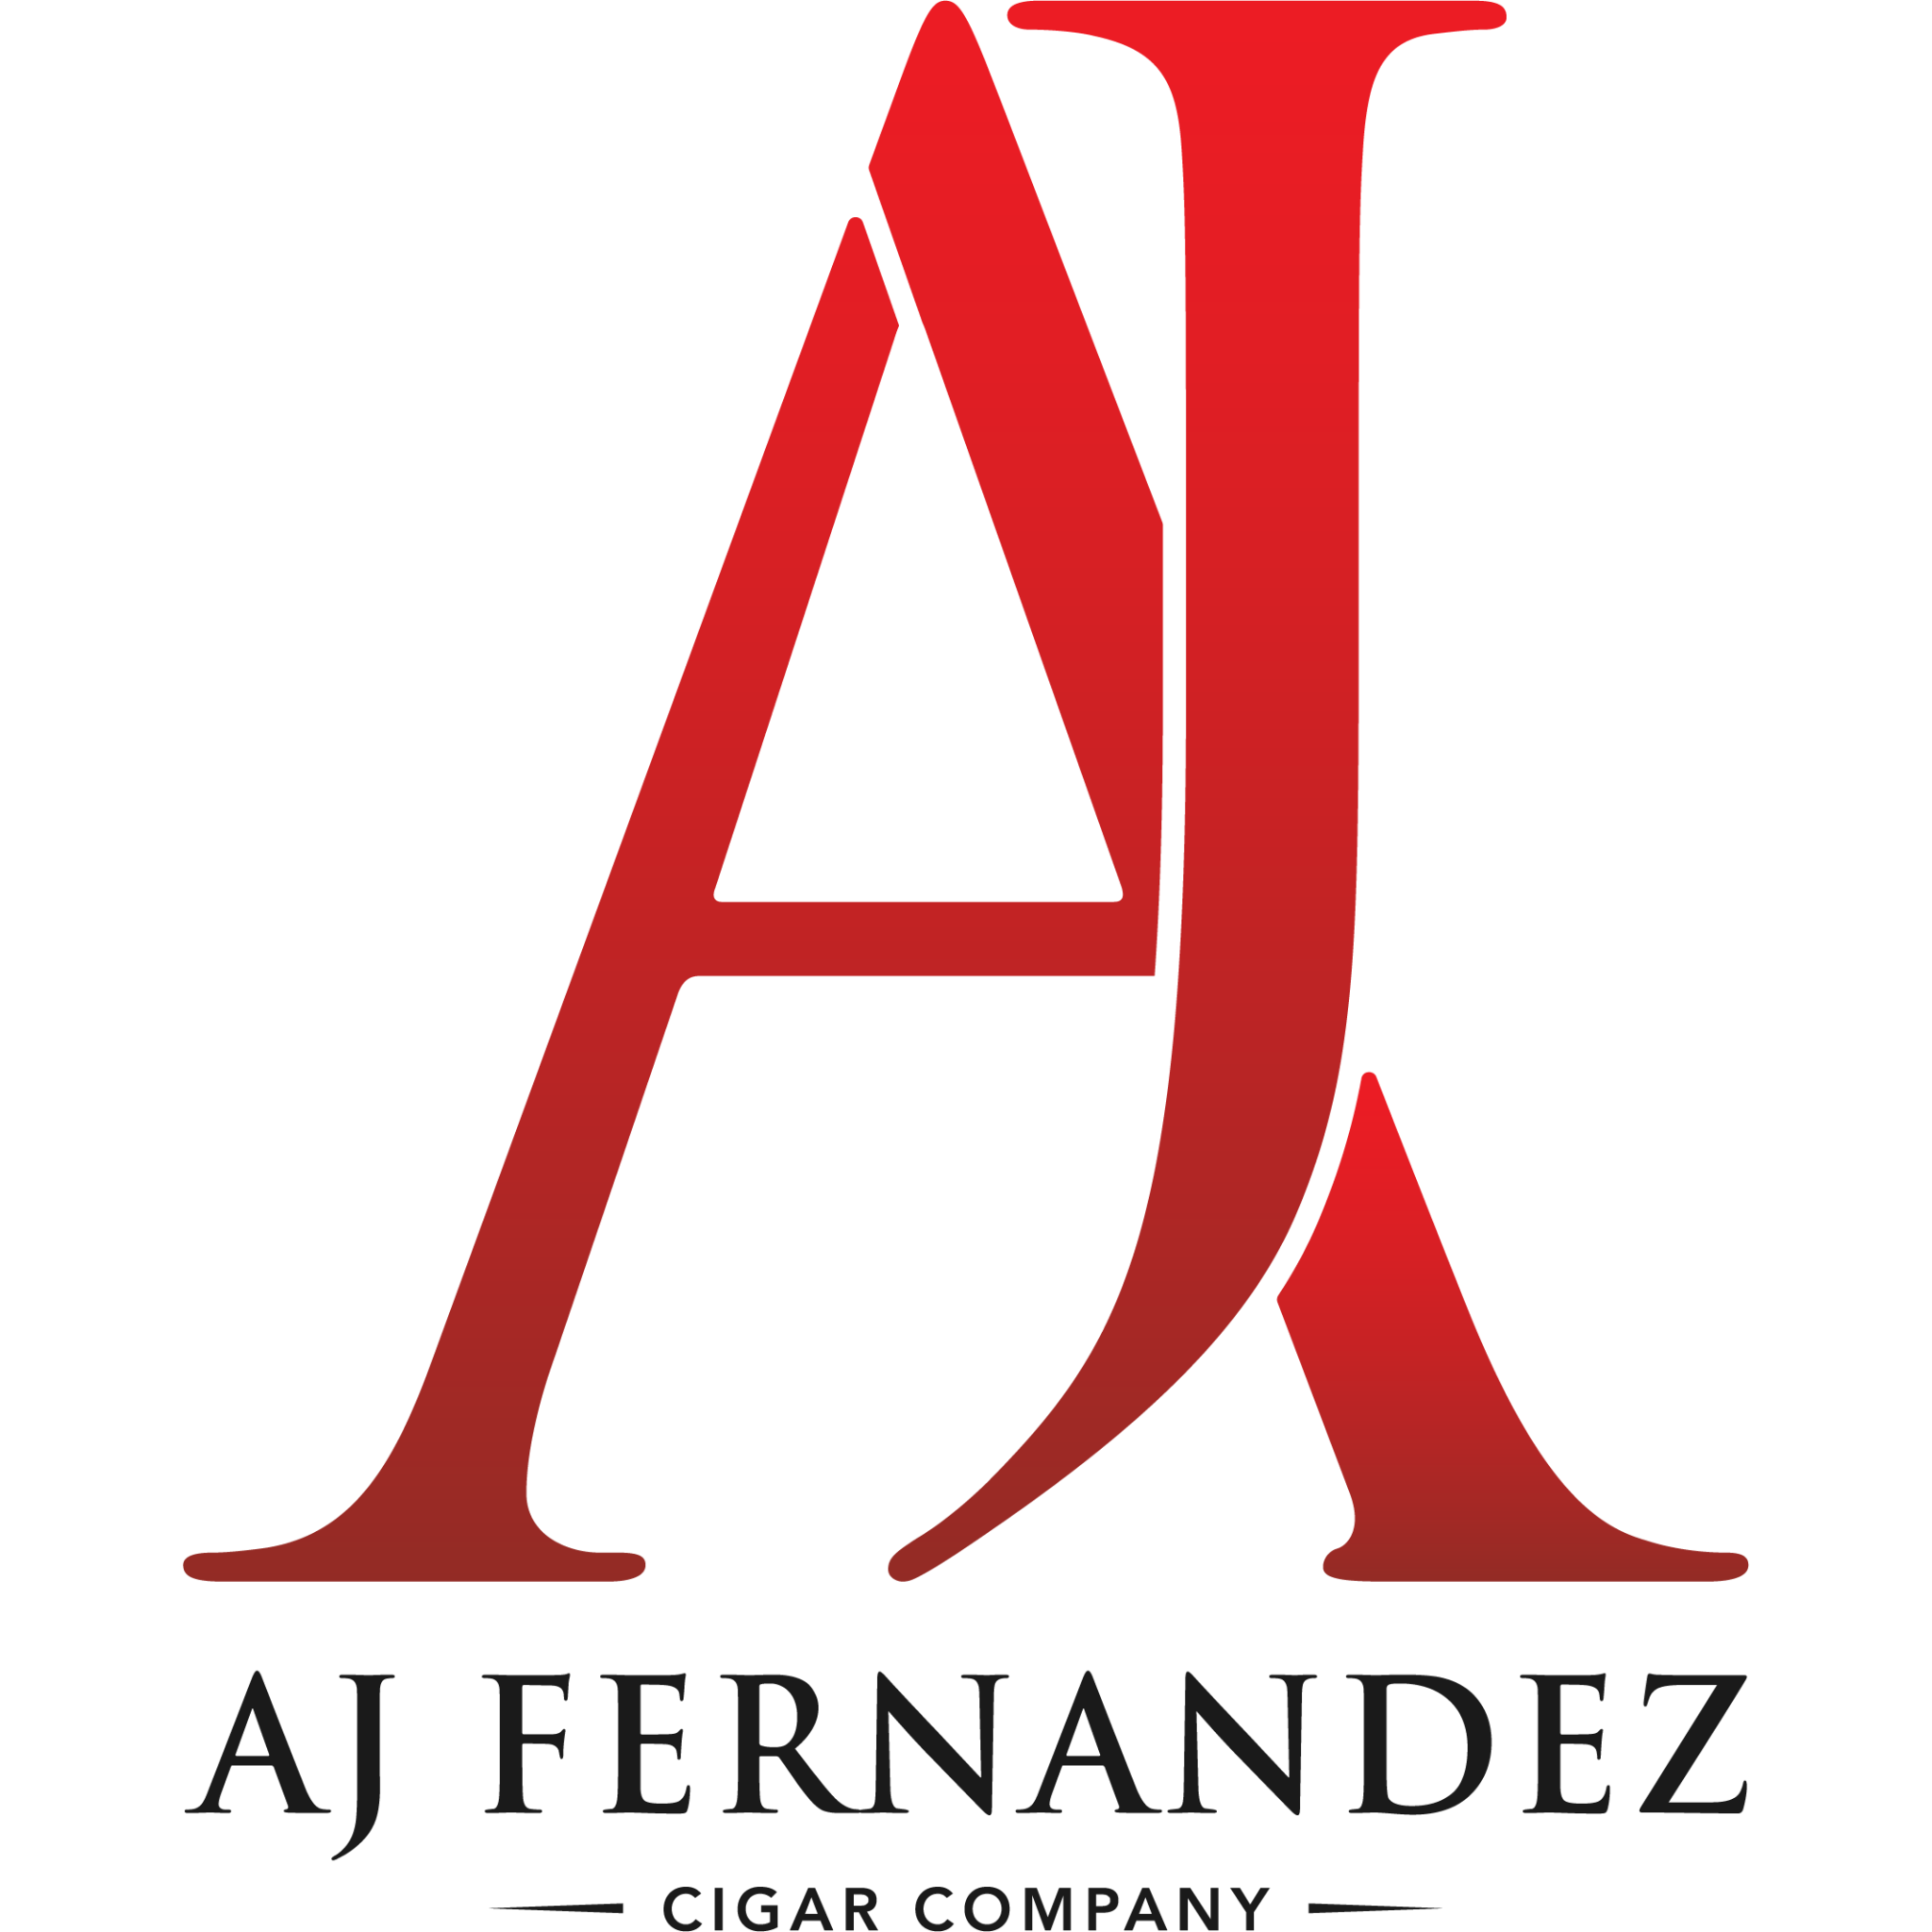 A.J.Fernandez